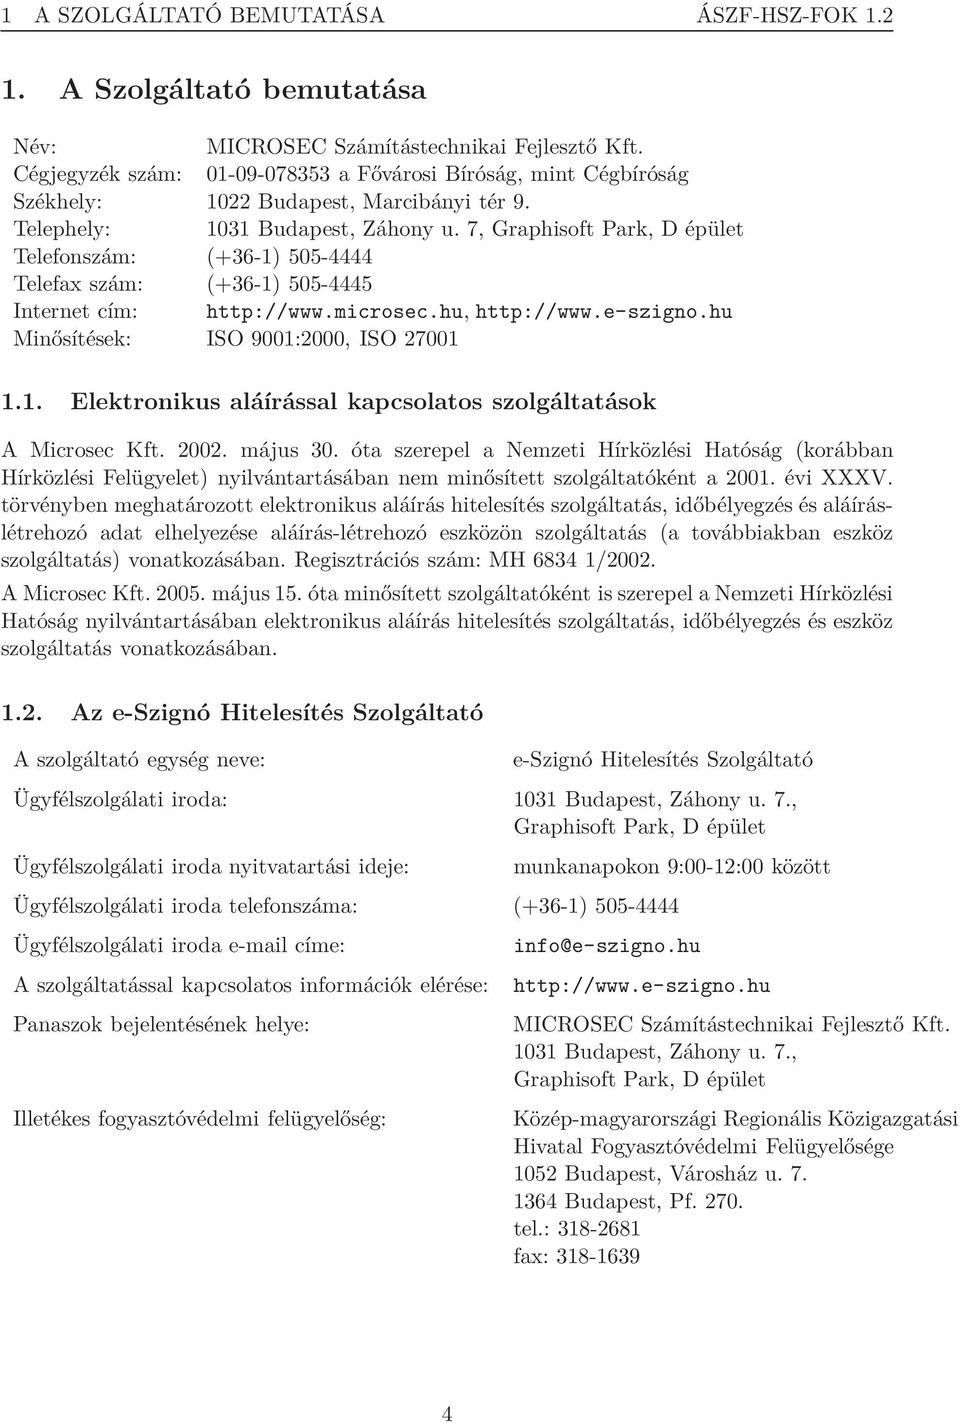 7, Graphisoft Park, D épület Telefonszám: (+36-1) 505-4444 Telefax szám: (+36-1) 505-4445 Internet cím: http://www.microsec.hu, http://www.e-szigno.hu Minősítések: ISO 9001:2000, ISO 27001 1.1. Elektronikus aláírással kapcsolatos szolgáltatások A Microsec Kft.